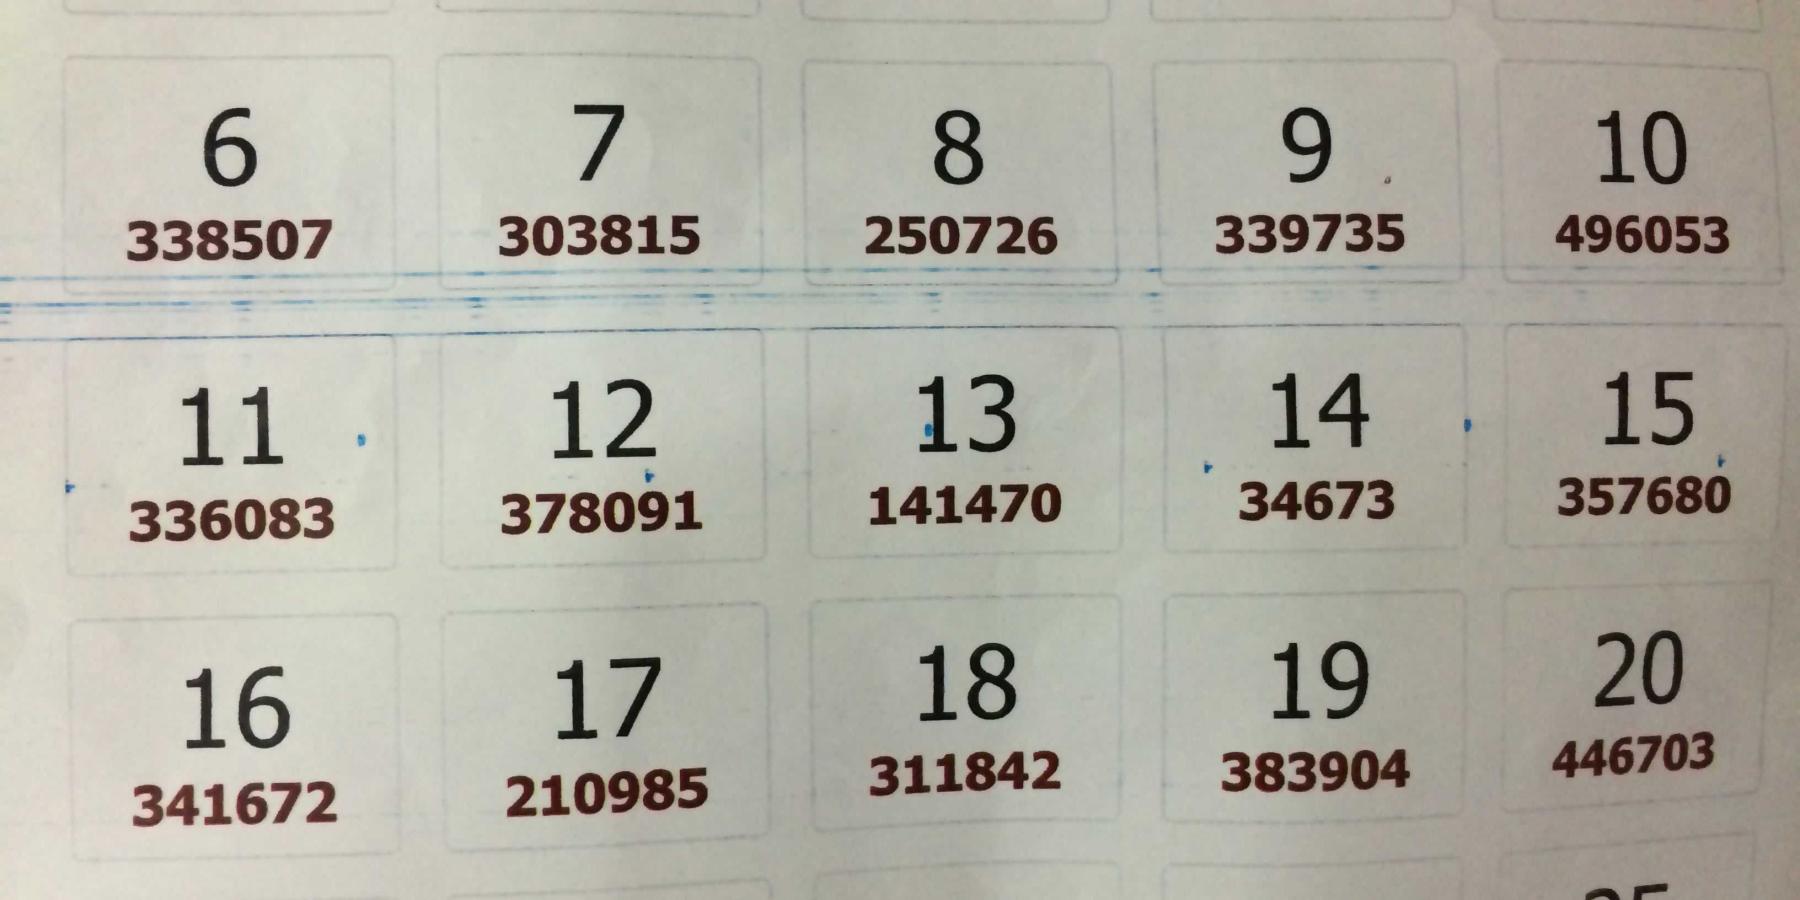 ارقام البطاقات الفائزه التي تم نشرها من خلال الطائره في سماء مدينة النجف الاشرف في يوم عيد الغدير الاغر والتي تم اعلانها خلال المهرجان